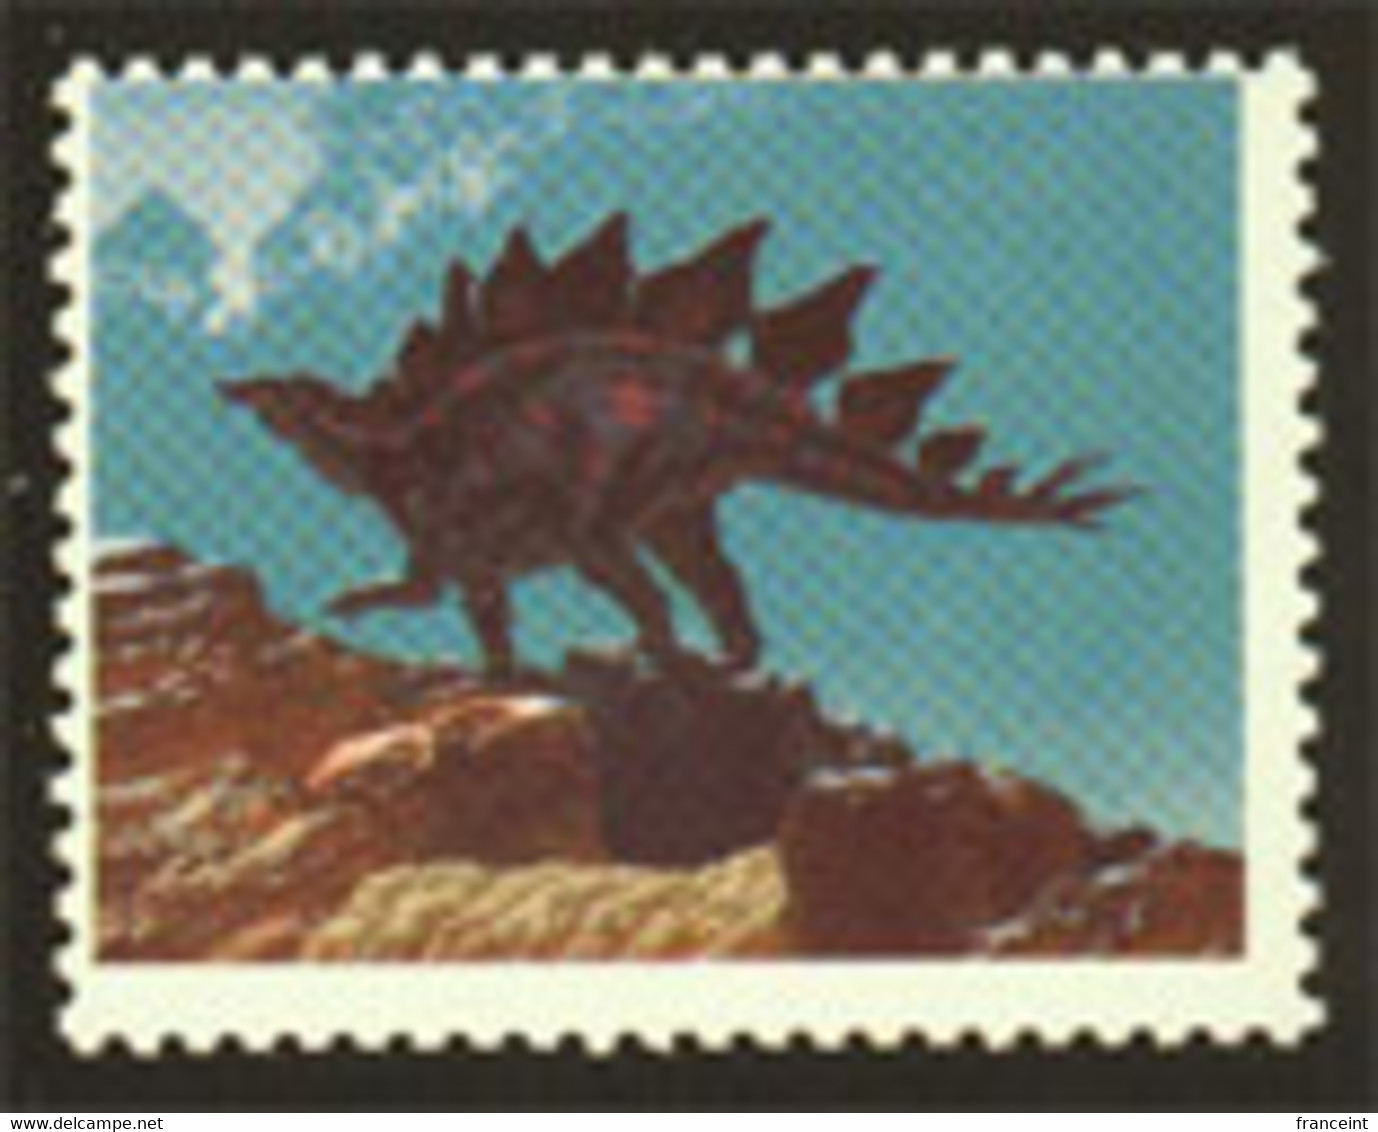 ETATS UNIS (1989a) Stégosaure. Scott No 2424. Superbe Variété: Sans La Couleur Noire. - Errors, Freaks & Oddities (EFOs)